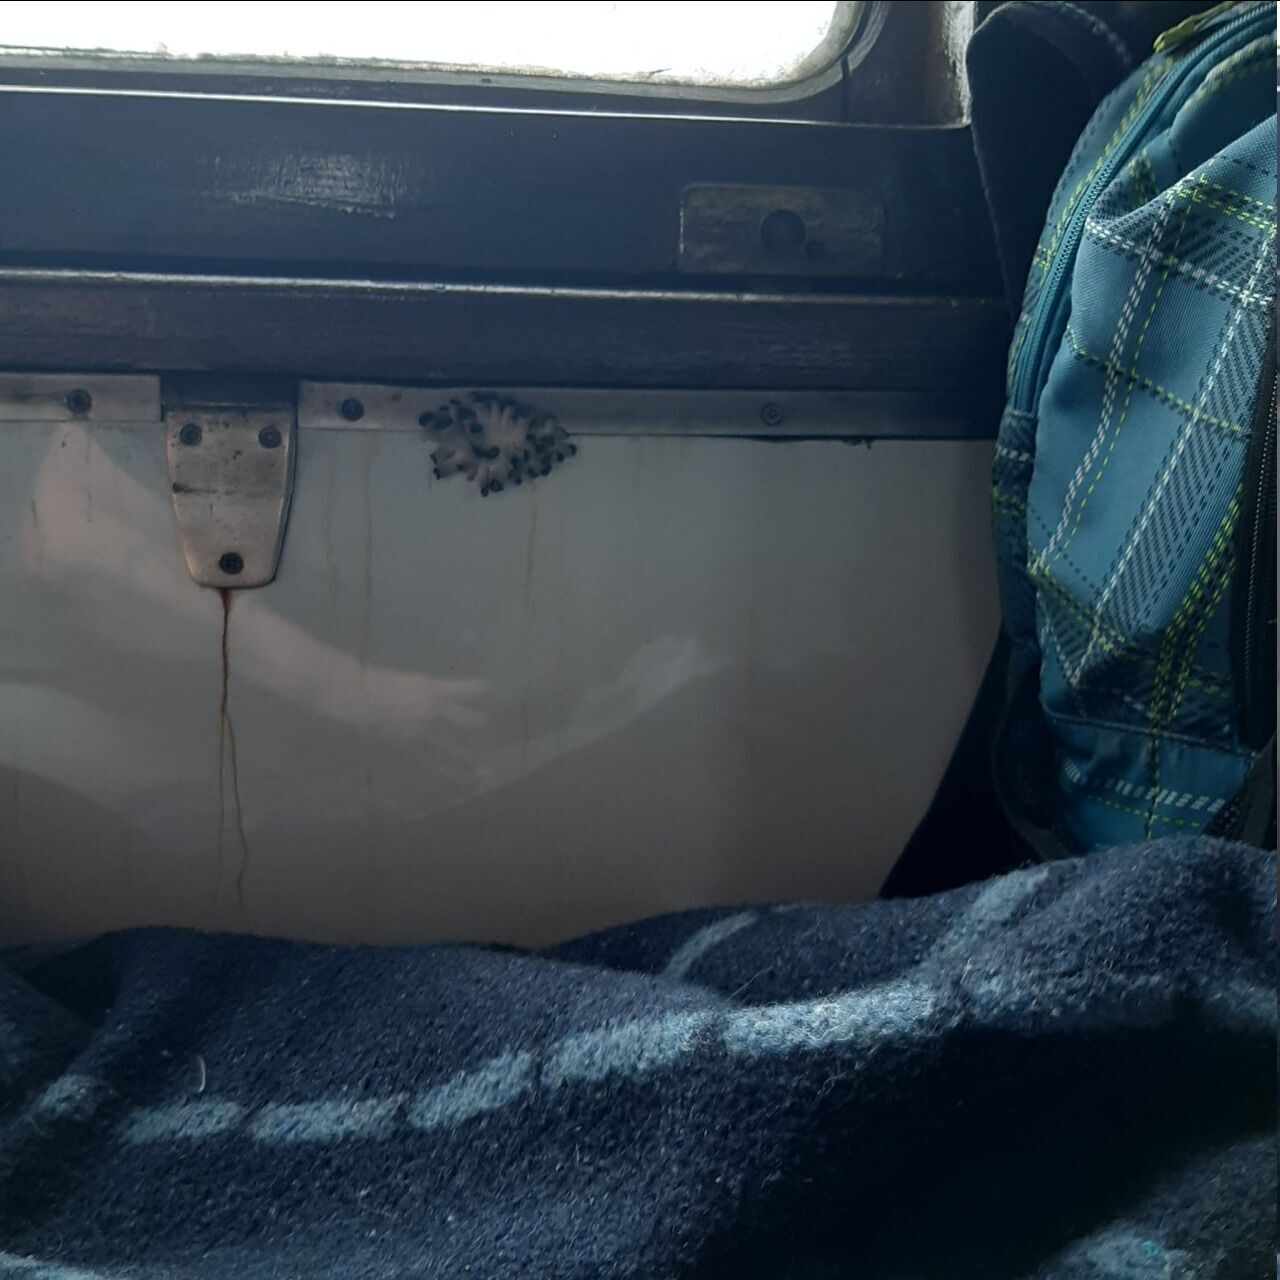 "Бонус к поездке?" Сеть взбудоражили фото грибов, выросших прямо в поезде УЗ. Фото